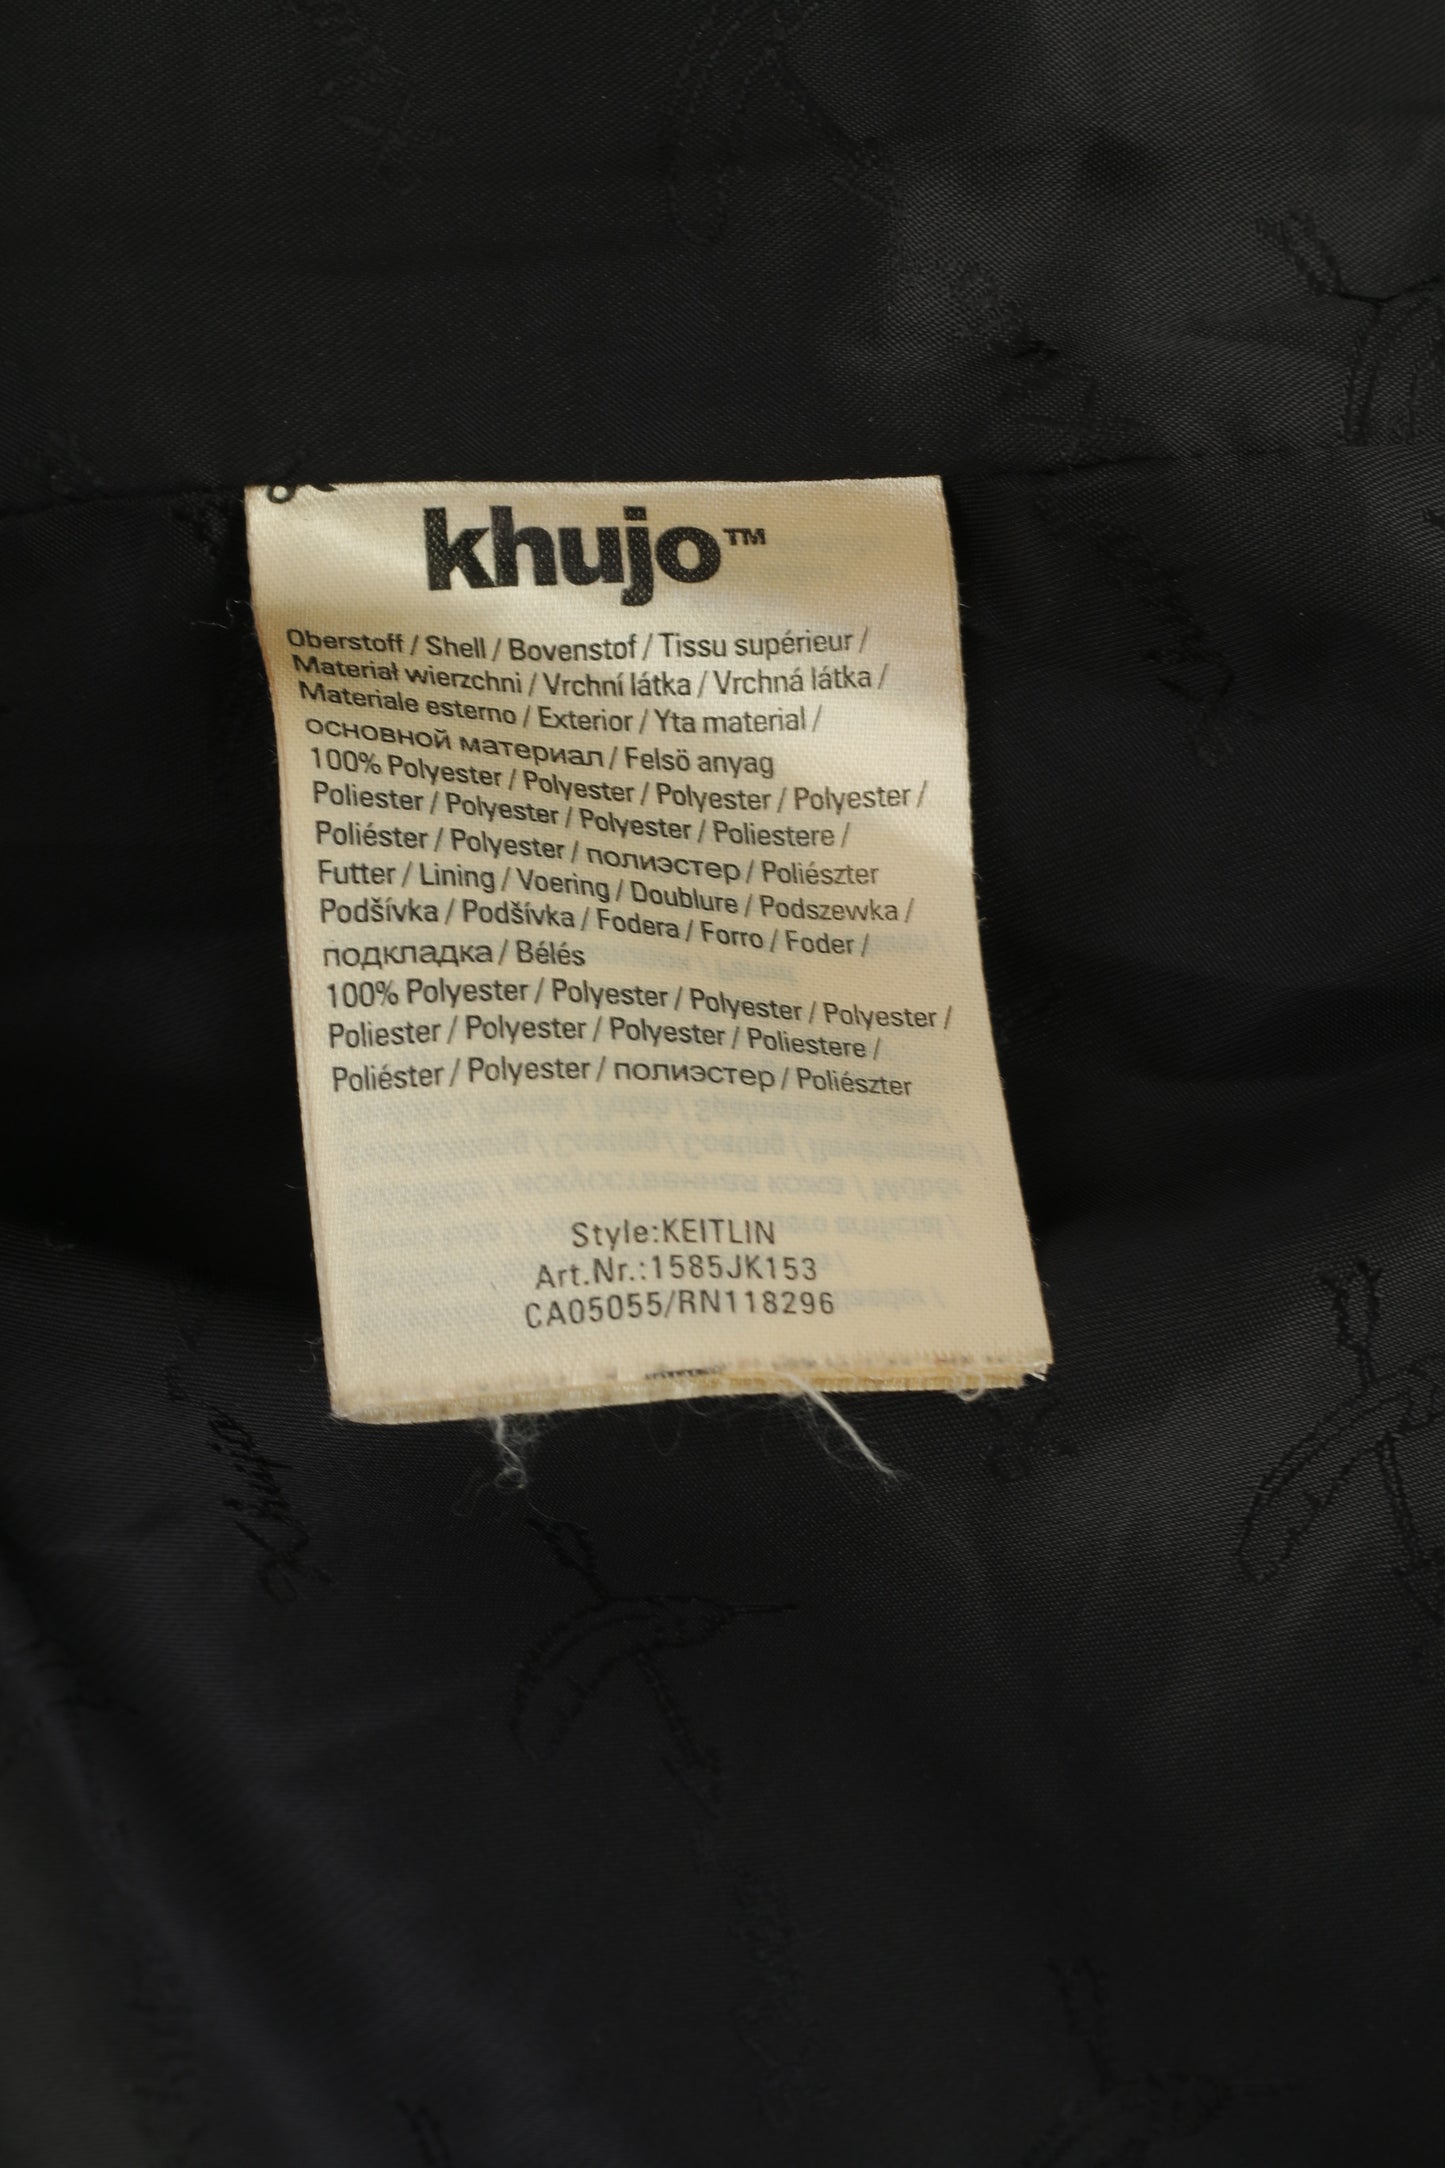 Khujo Femmes L (M) Manteau Gris Rayé Vintage Inspiré Keitlin Full Zipper Top